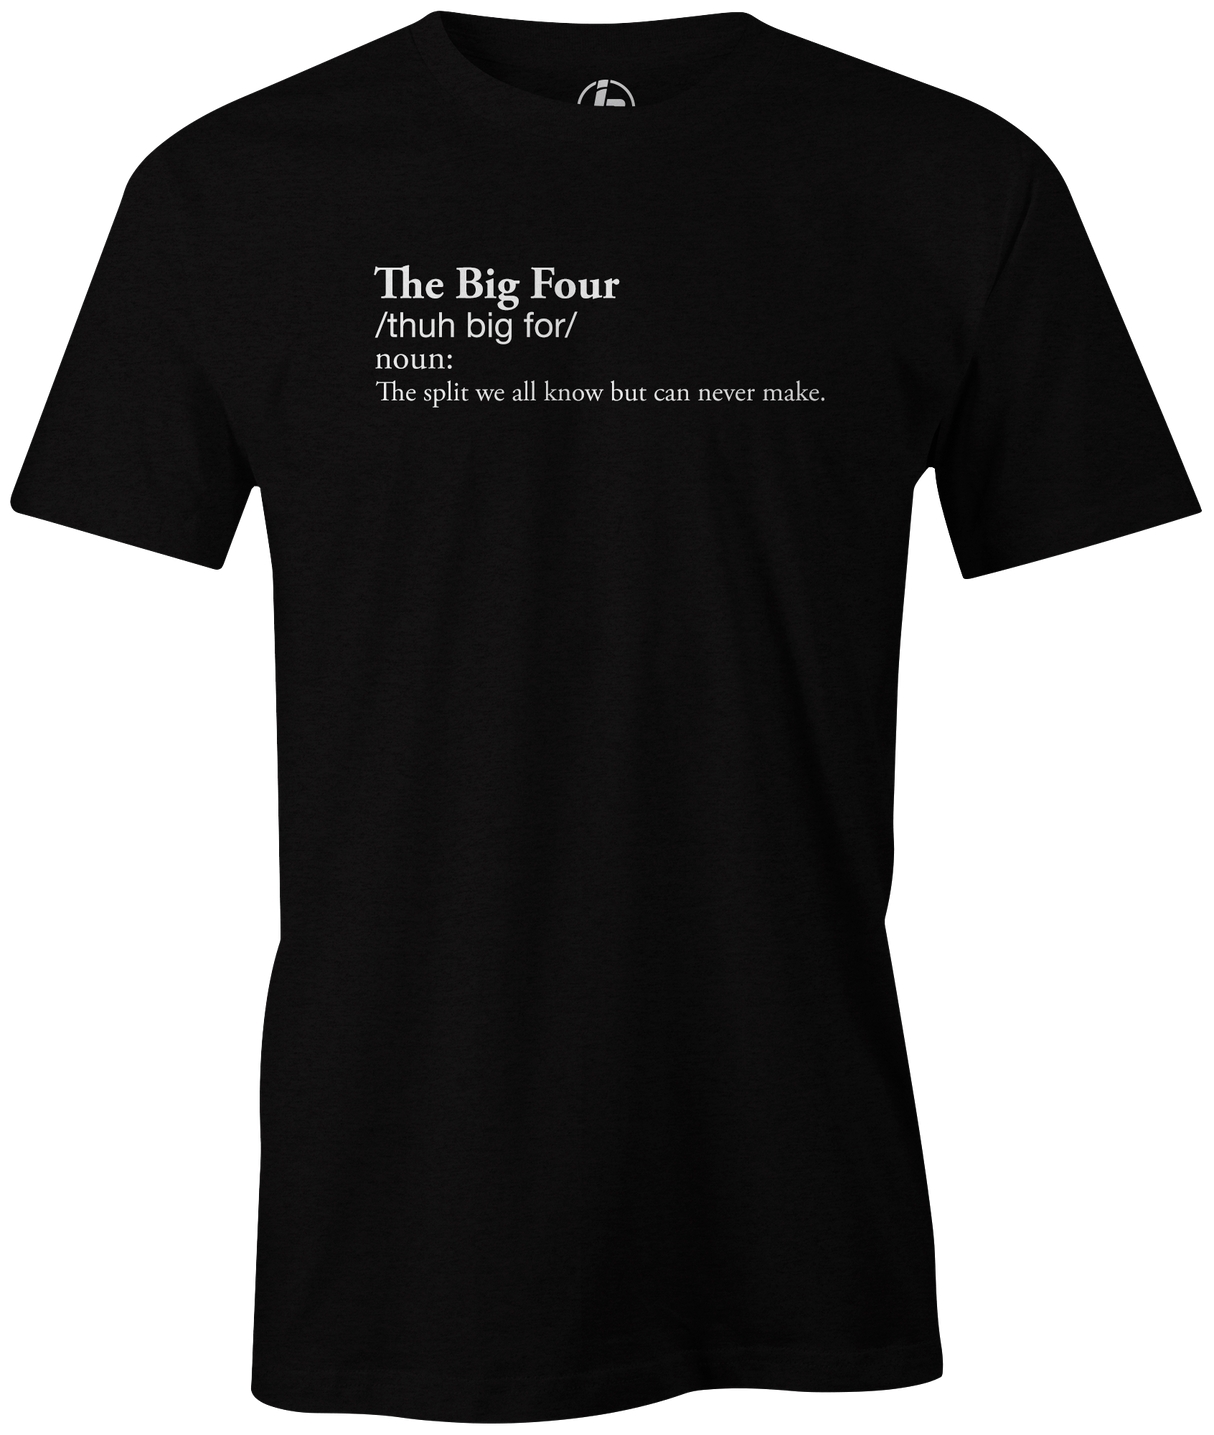 the-big-four-bowling-split-bowler-shirt-bowl-tshirt